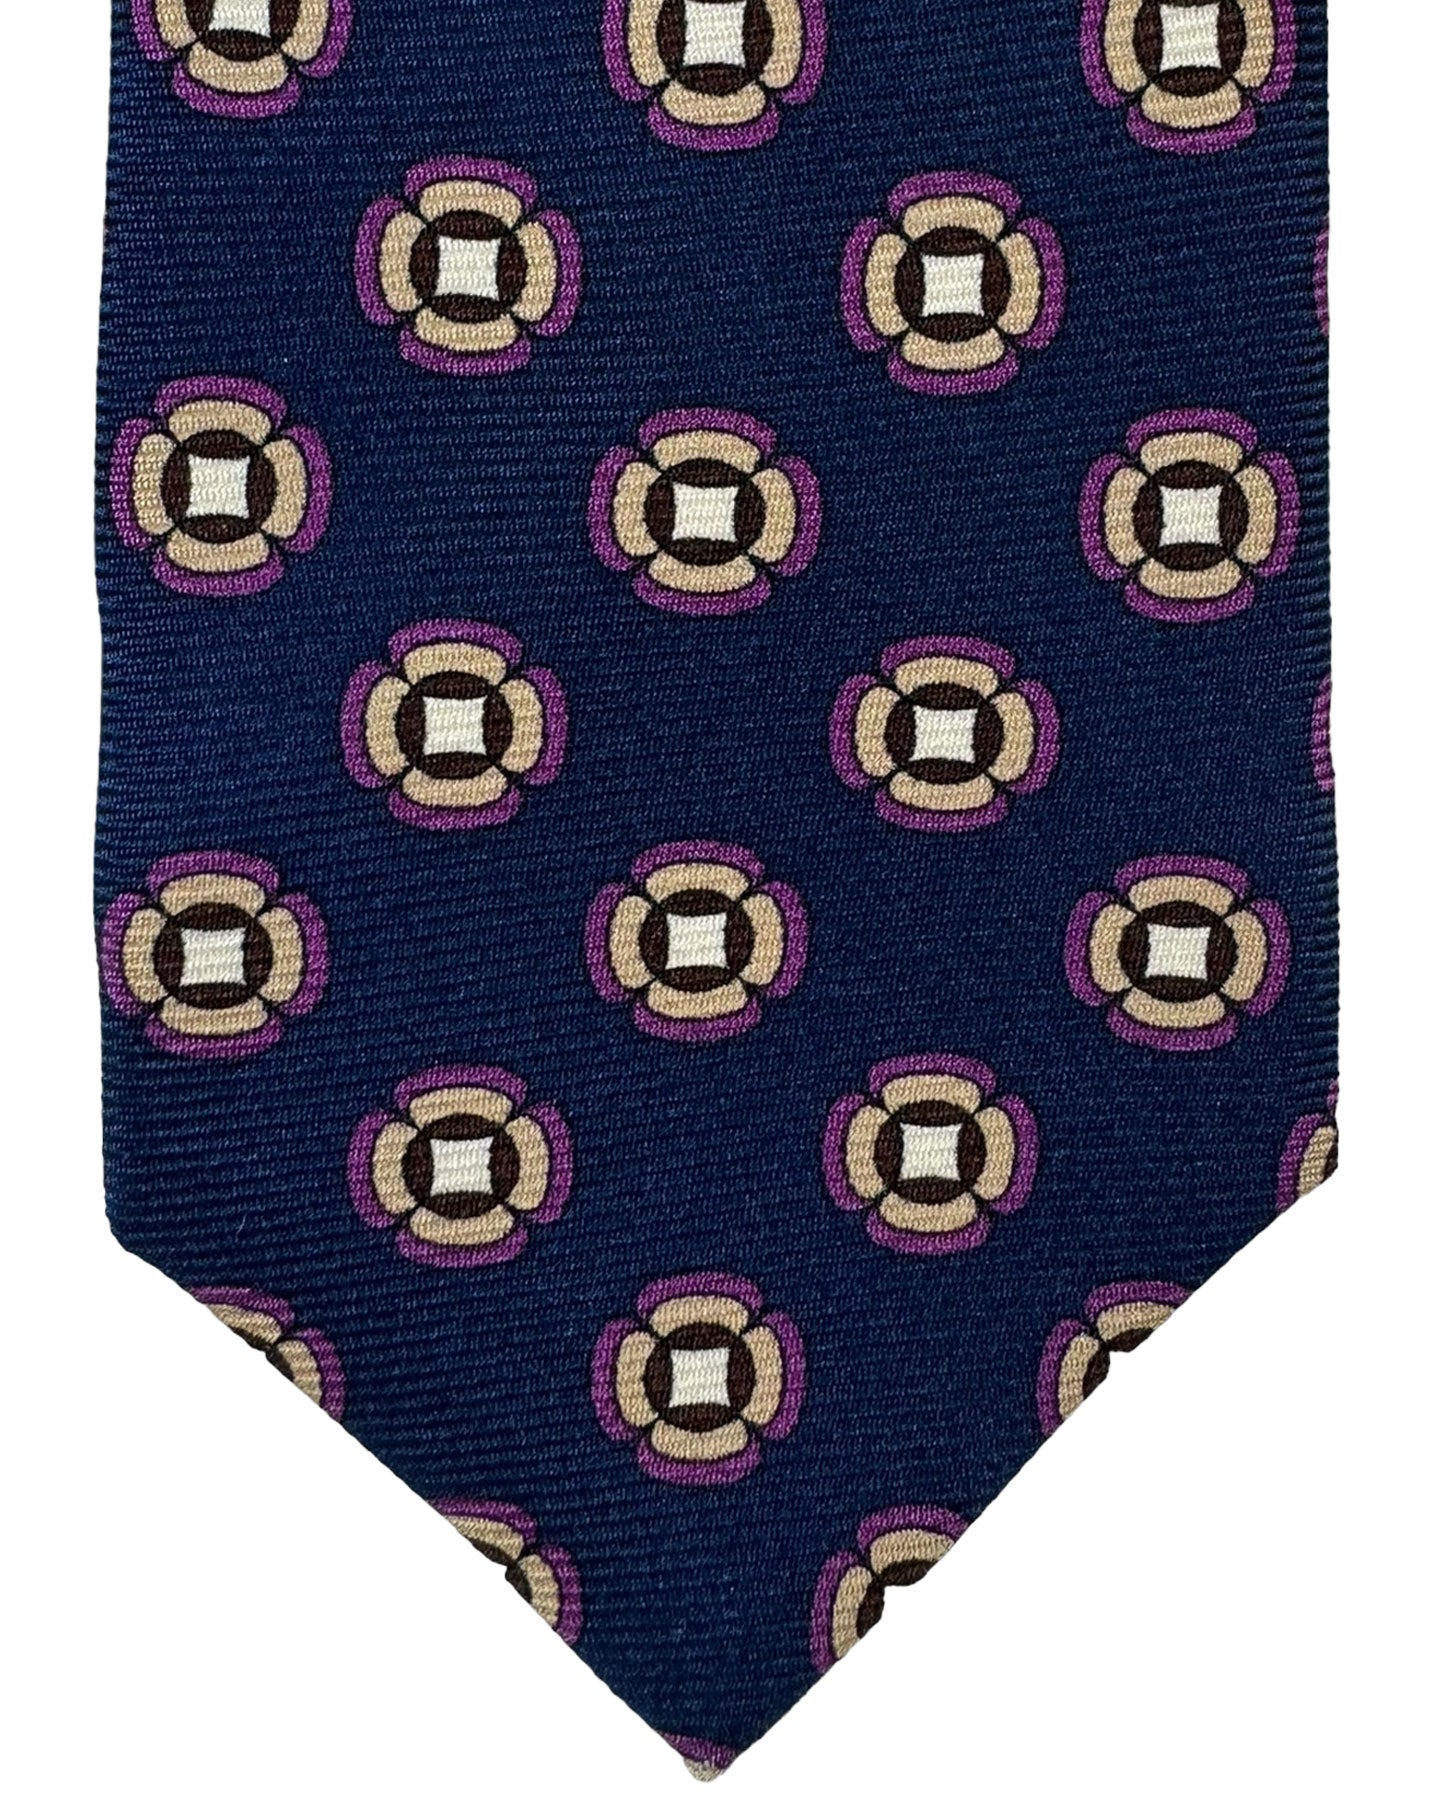 Kiton Tie Dark Blue Brown Purple Geometric - Sevenfold Necktie